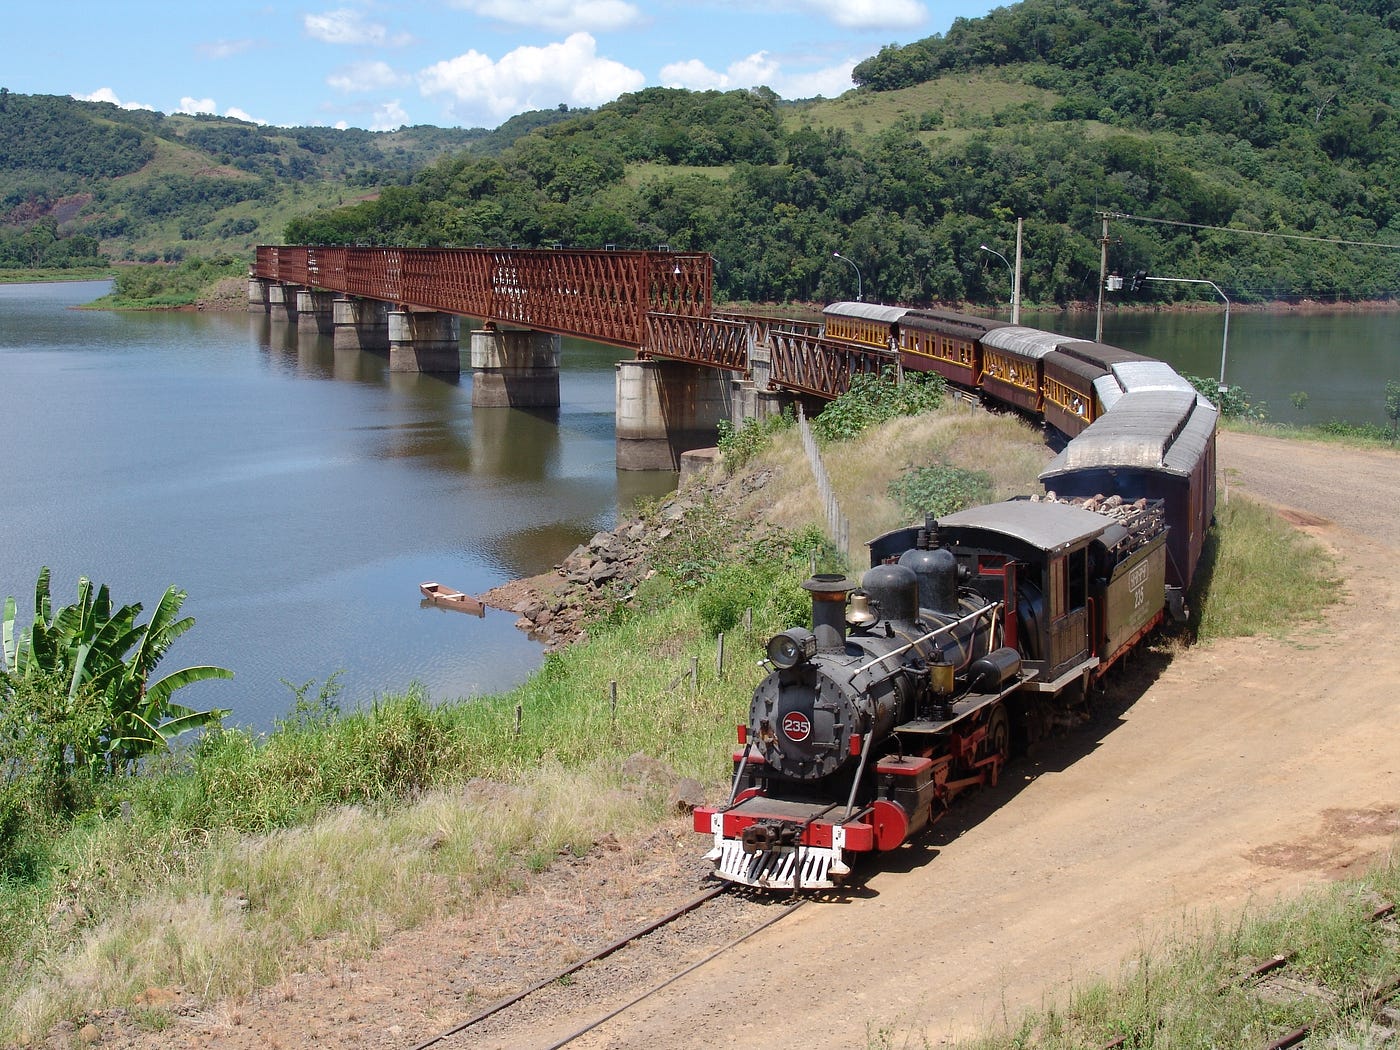 Trenzinho solta fumaça de verdade locomotiva vagões trilhos e estação